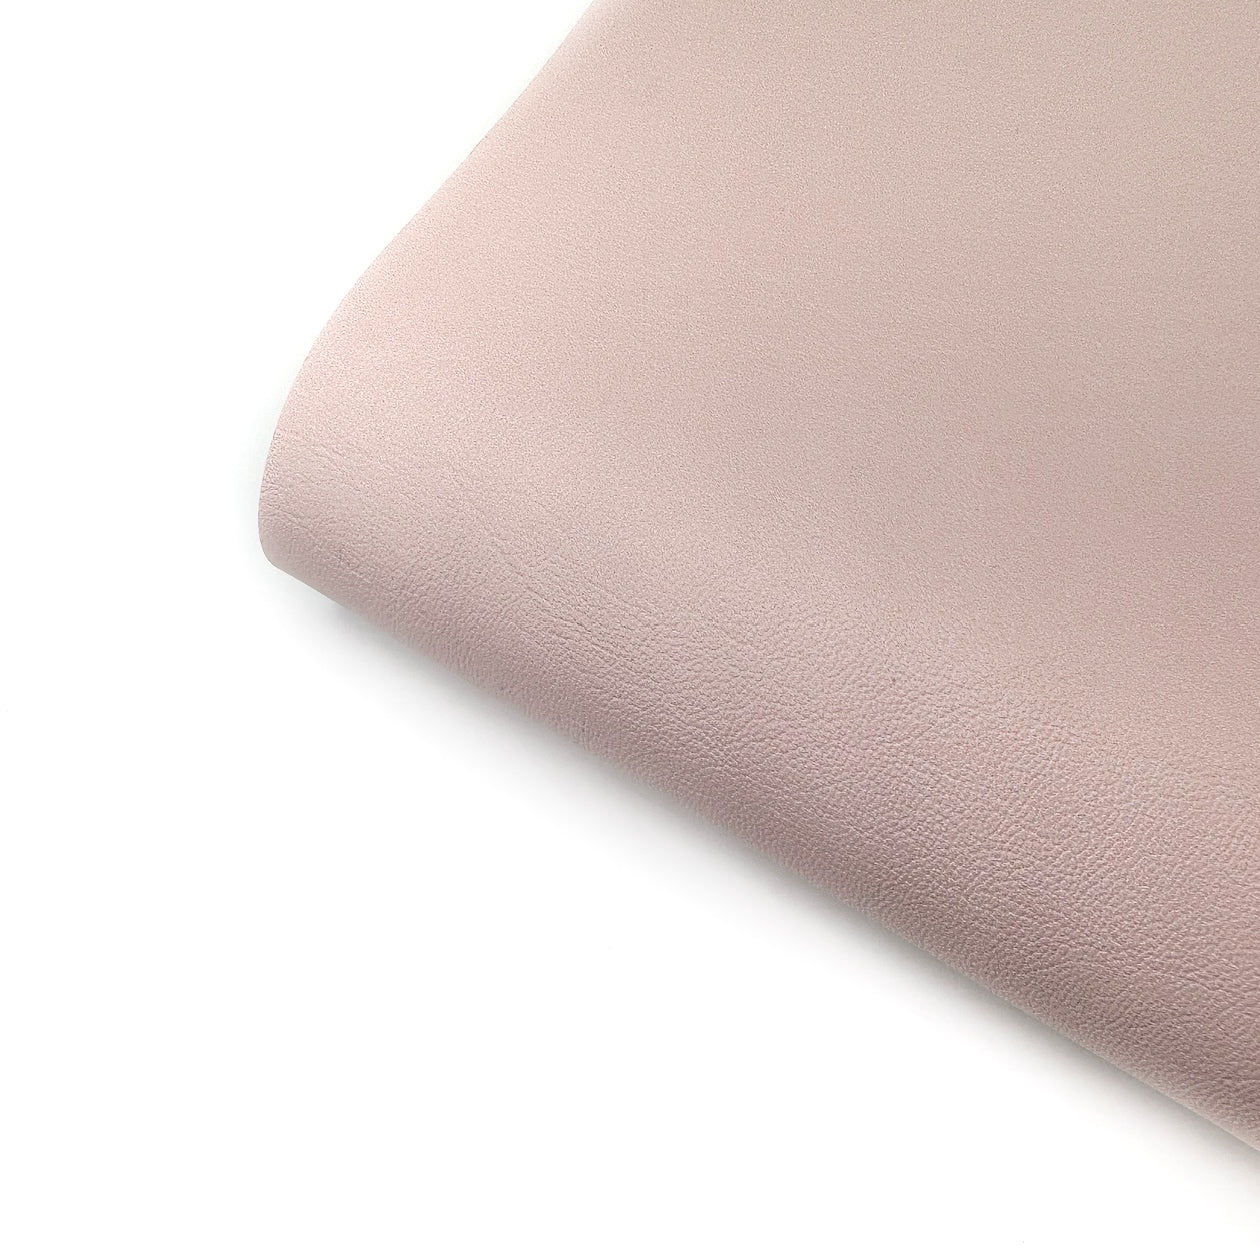 Ballerina Shoes Core Colour Premium Faux Leather Fabric Sheets